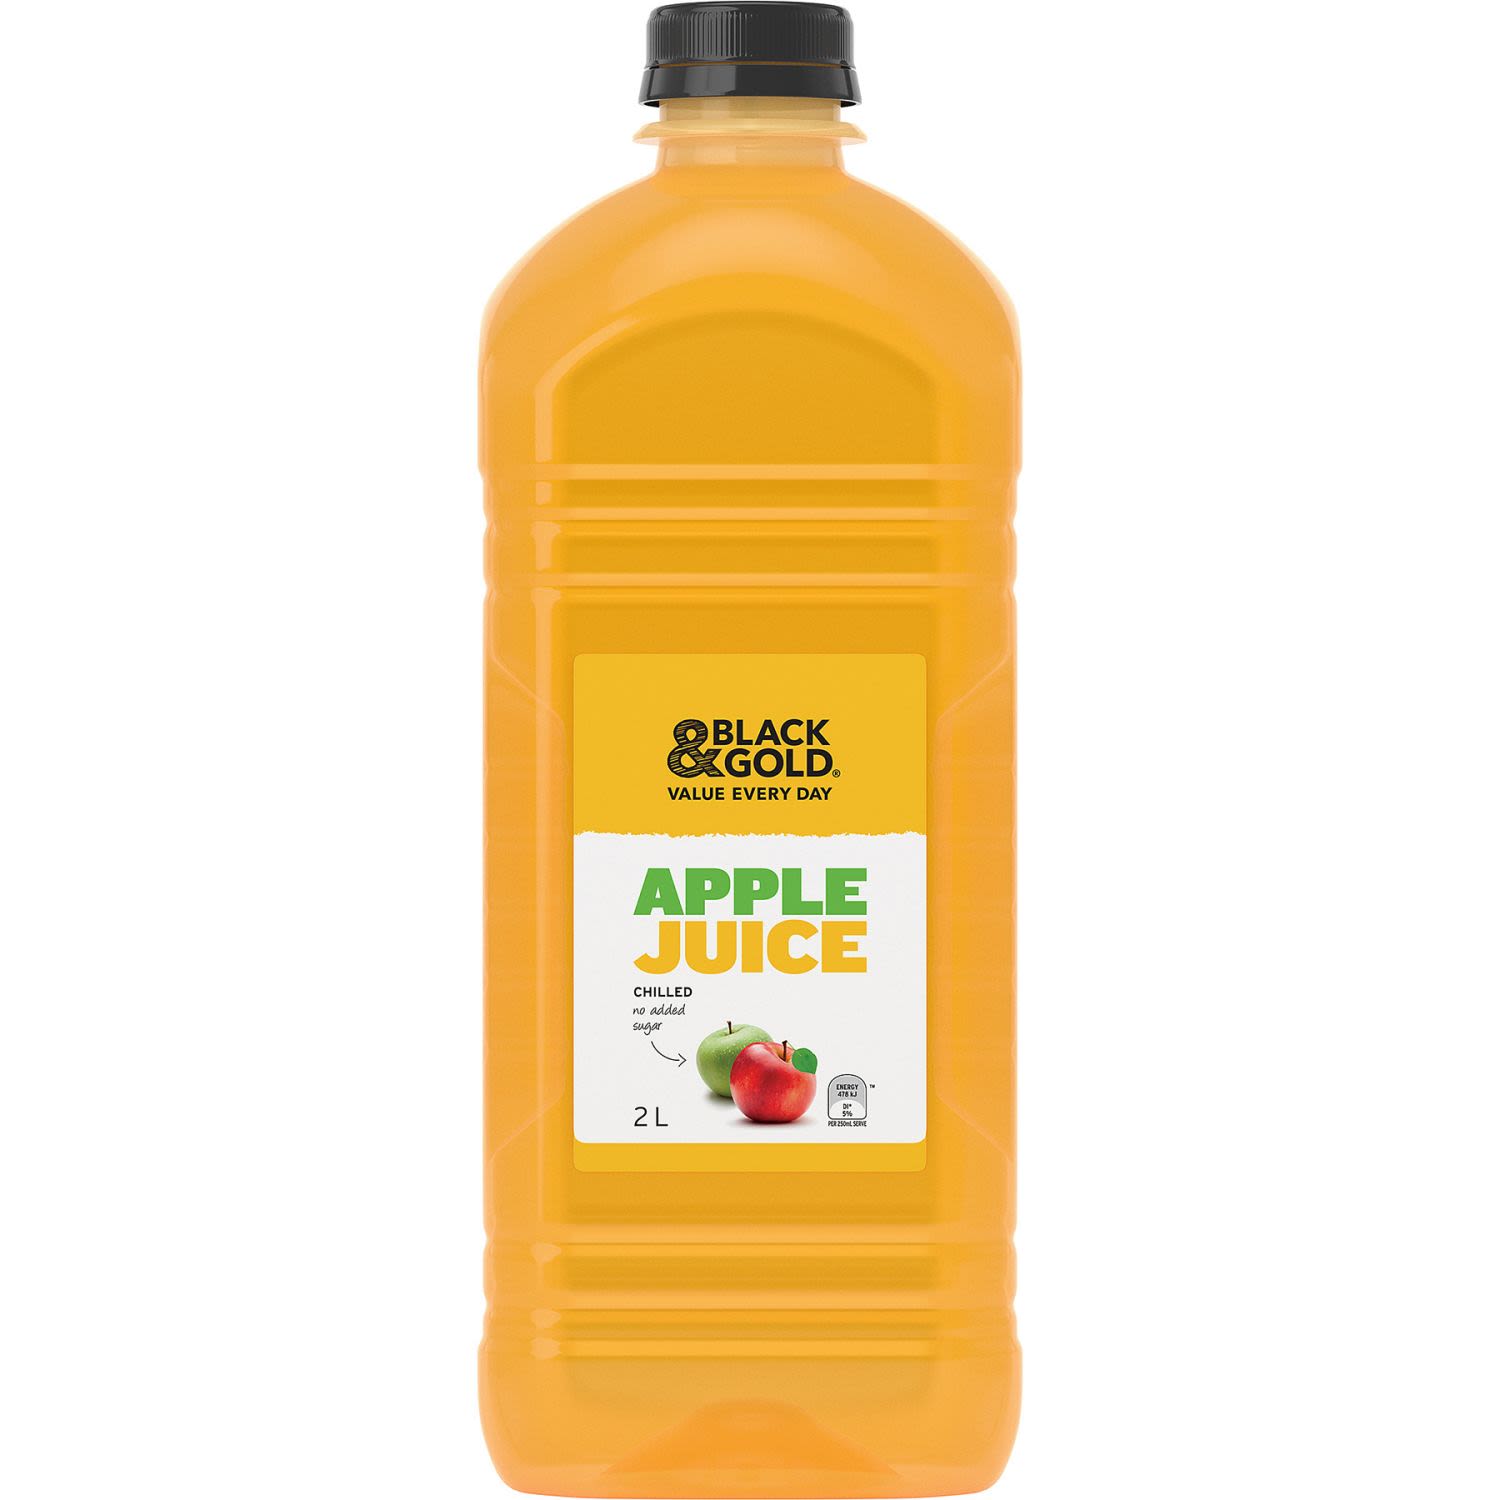 Black & Gold Apple Juice No Added Sugar, 2 Litre